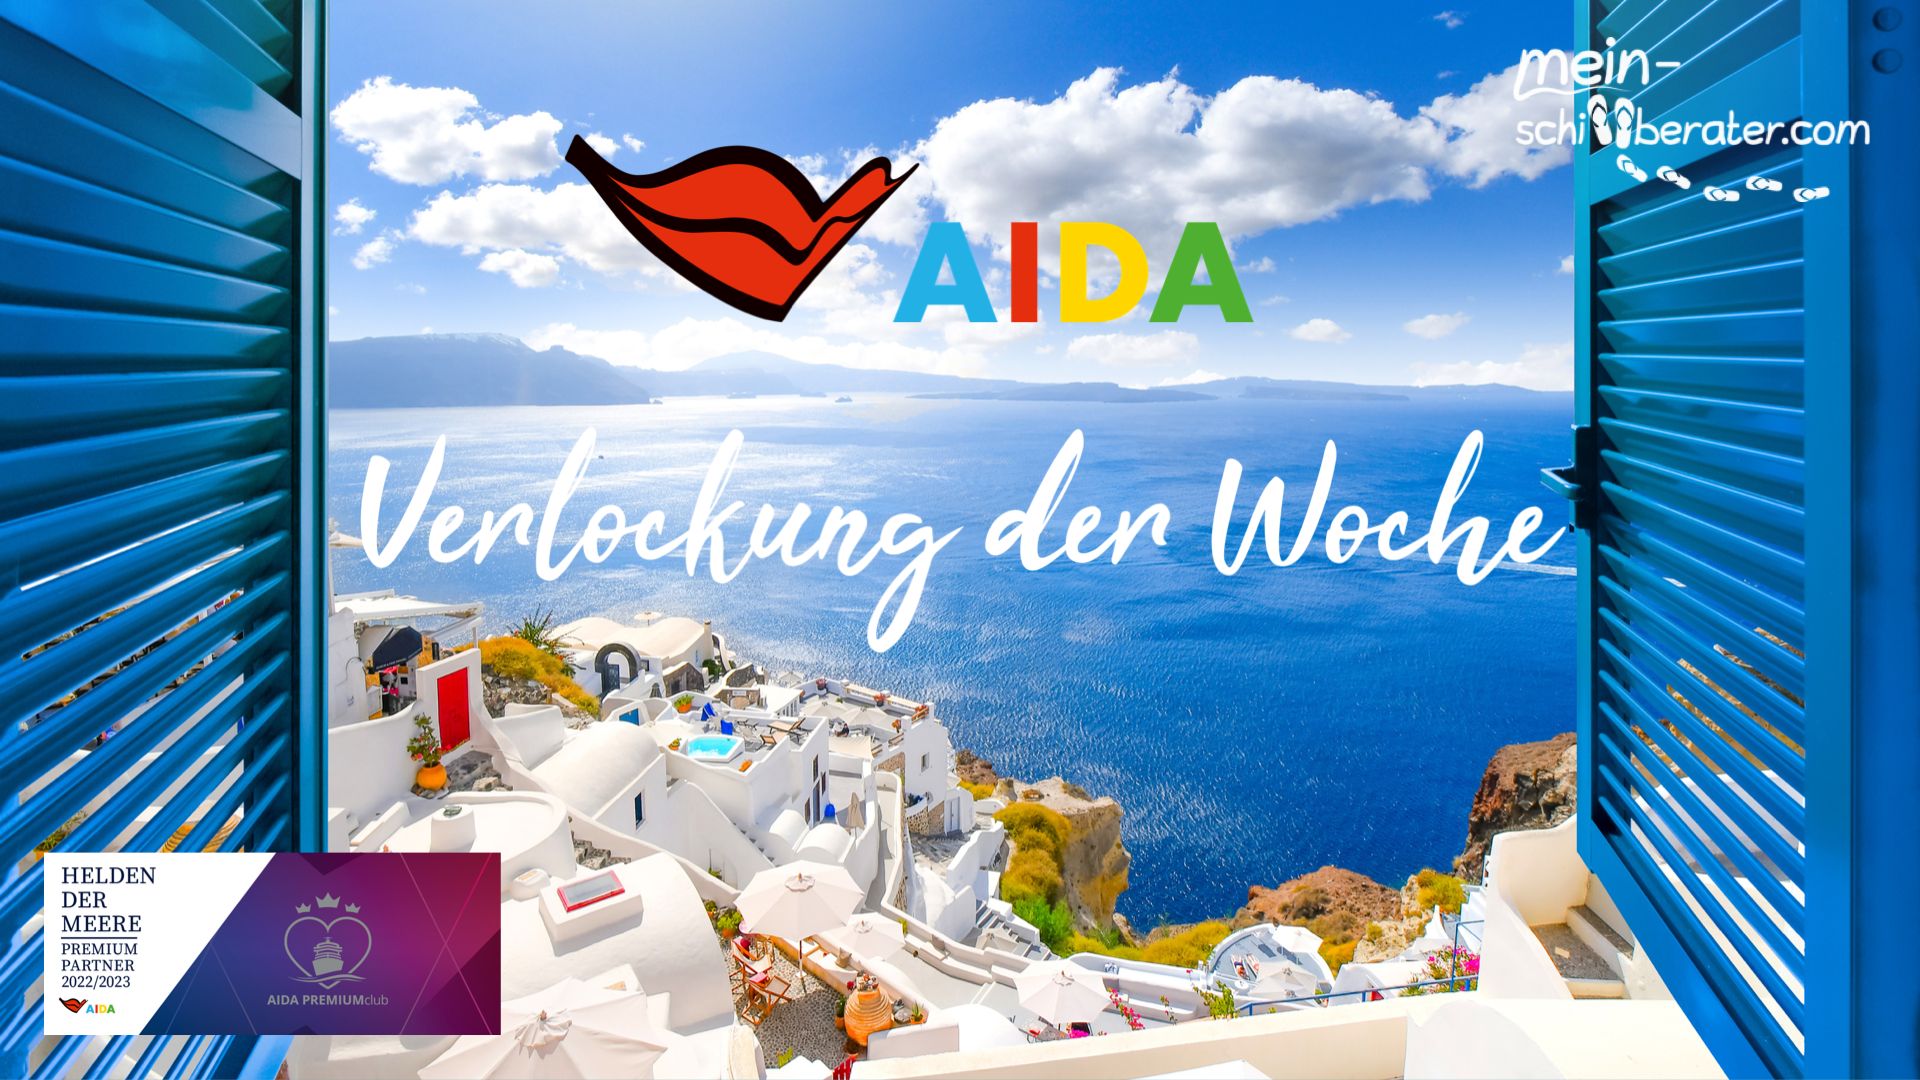 AIDA Verlockung der Woche: Lass dich von den neuen Angeboten inspirieren